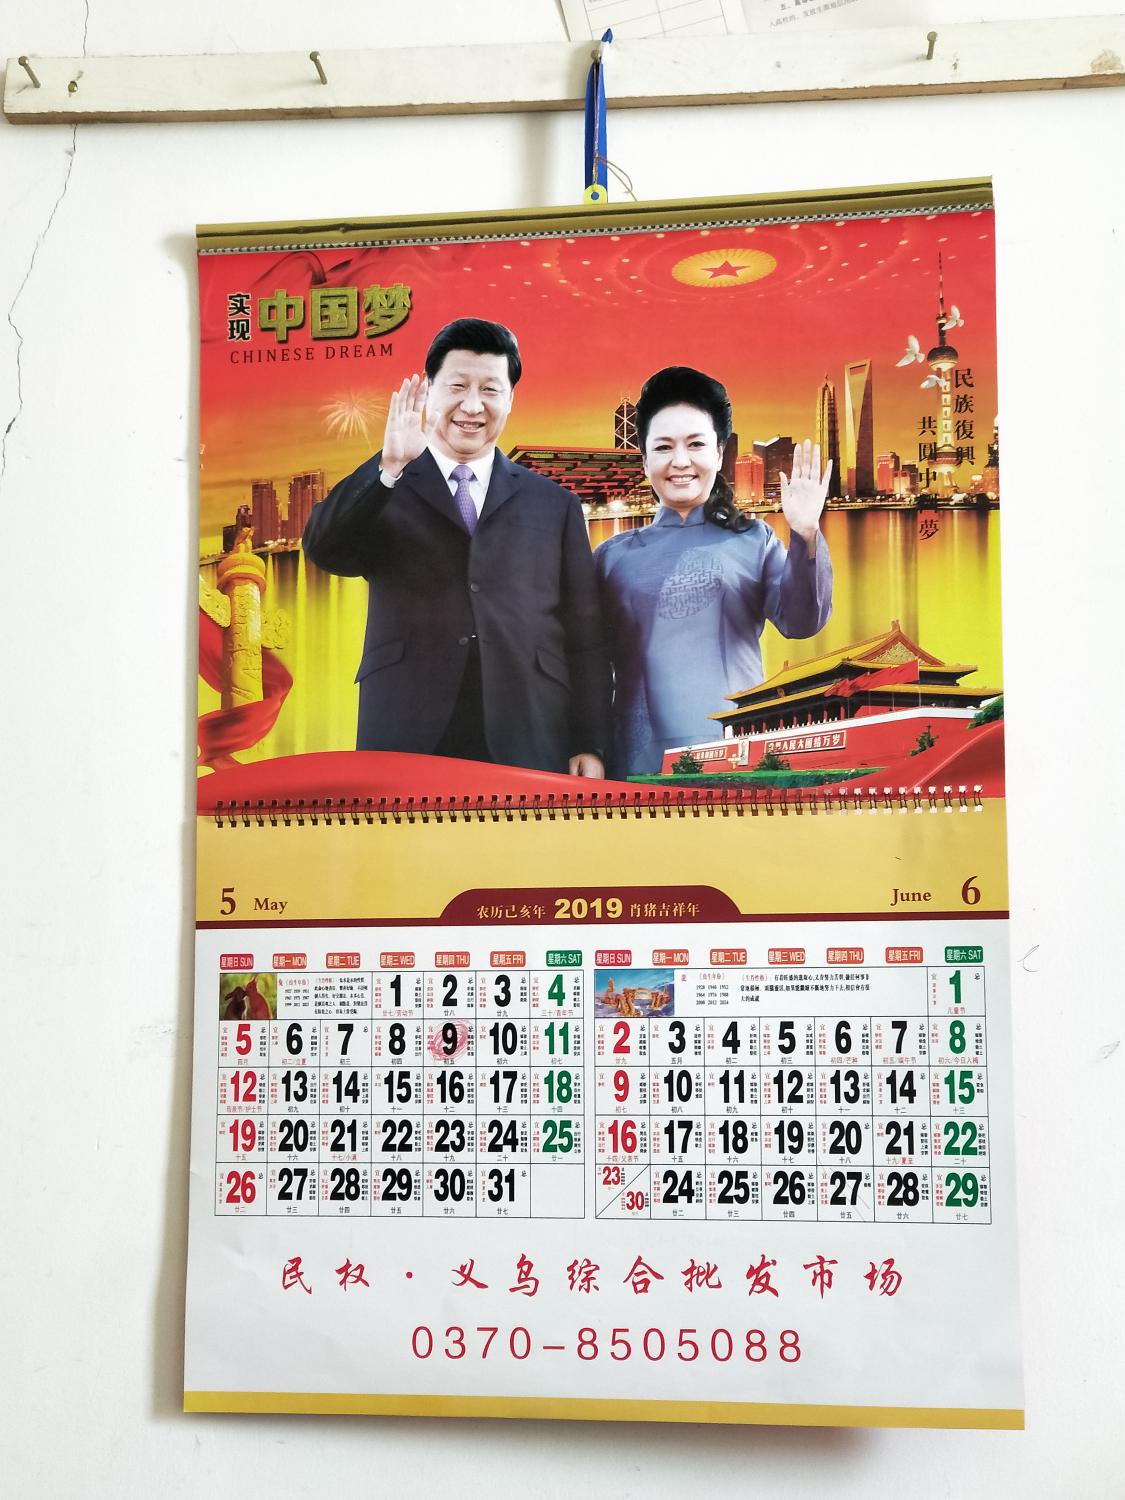 A school calendar hangs in a teacher's office